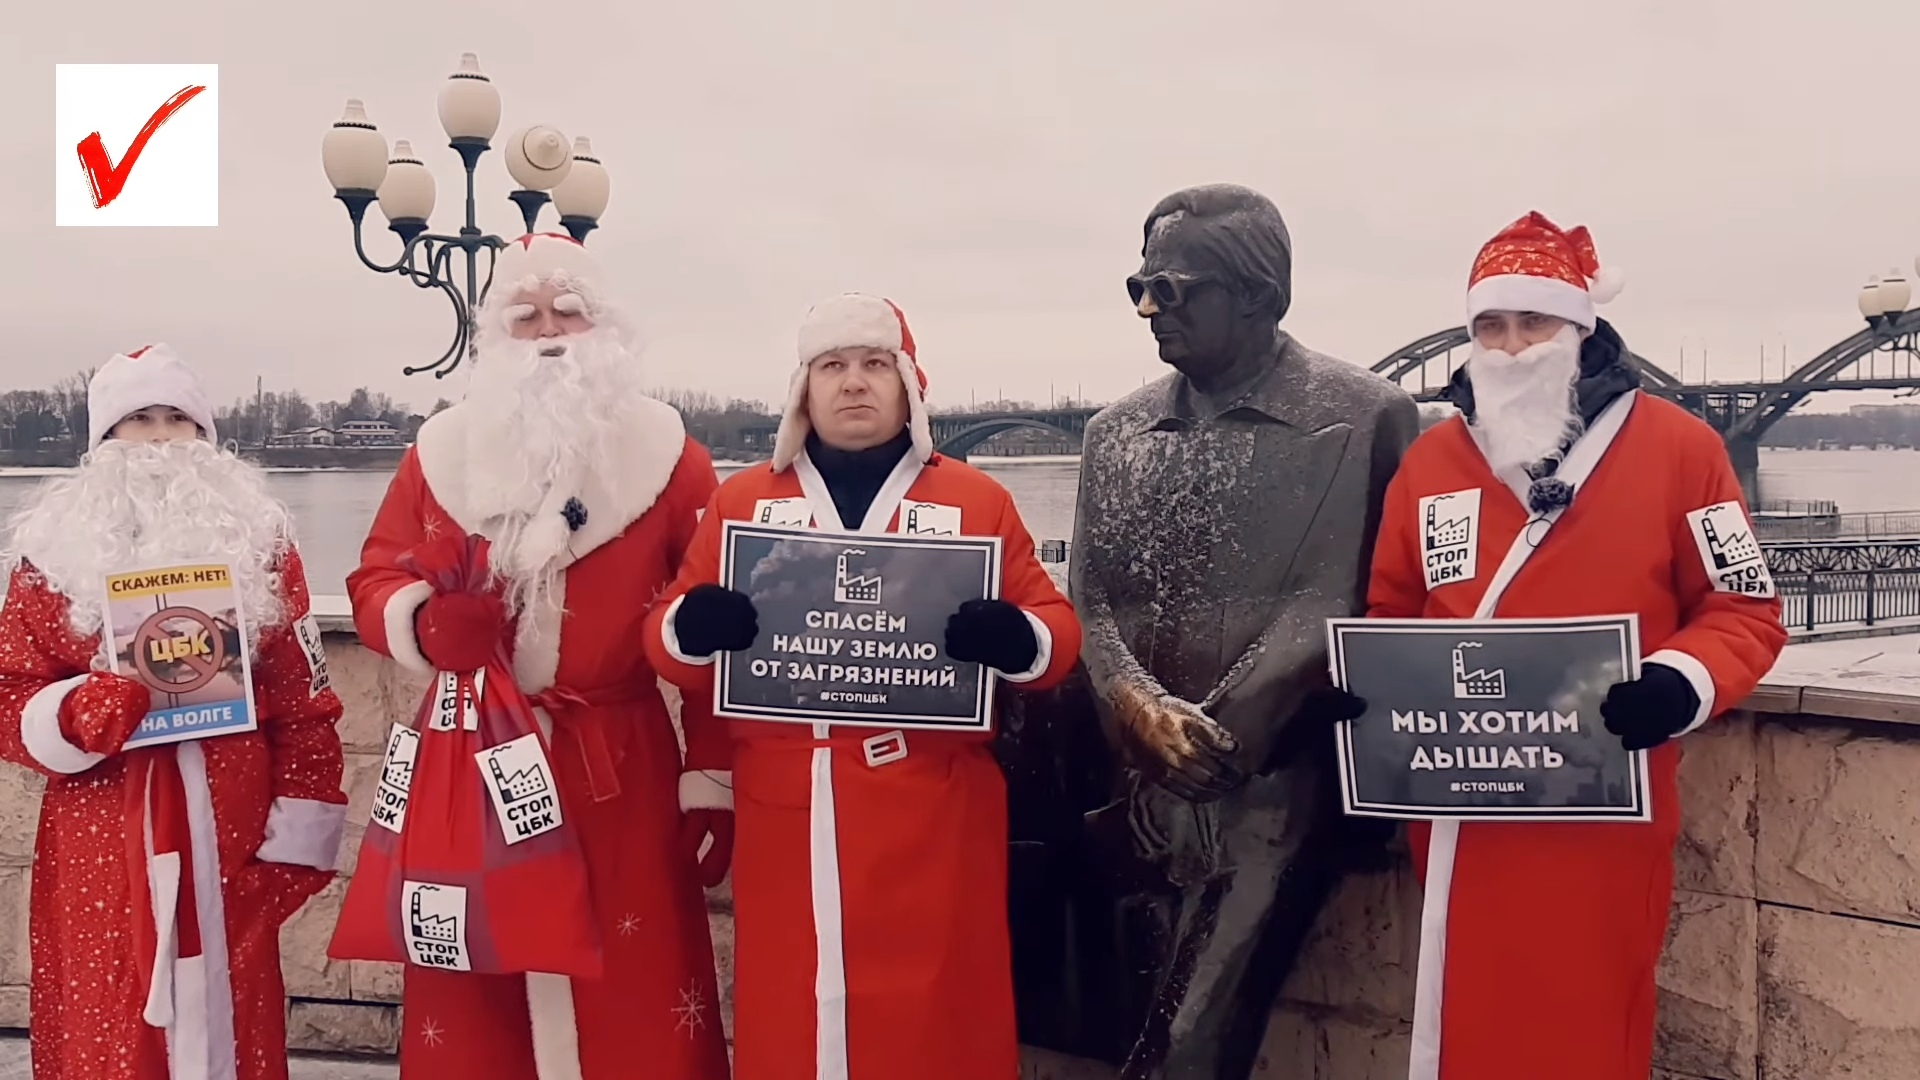 "Деды морозы против ЦБК": ярославцы записали видео-обращение с требованиями